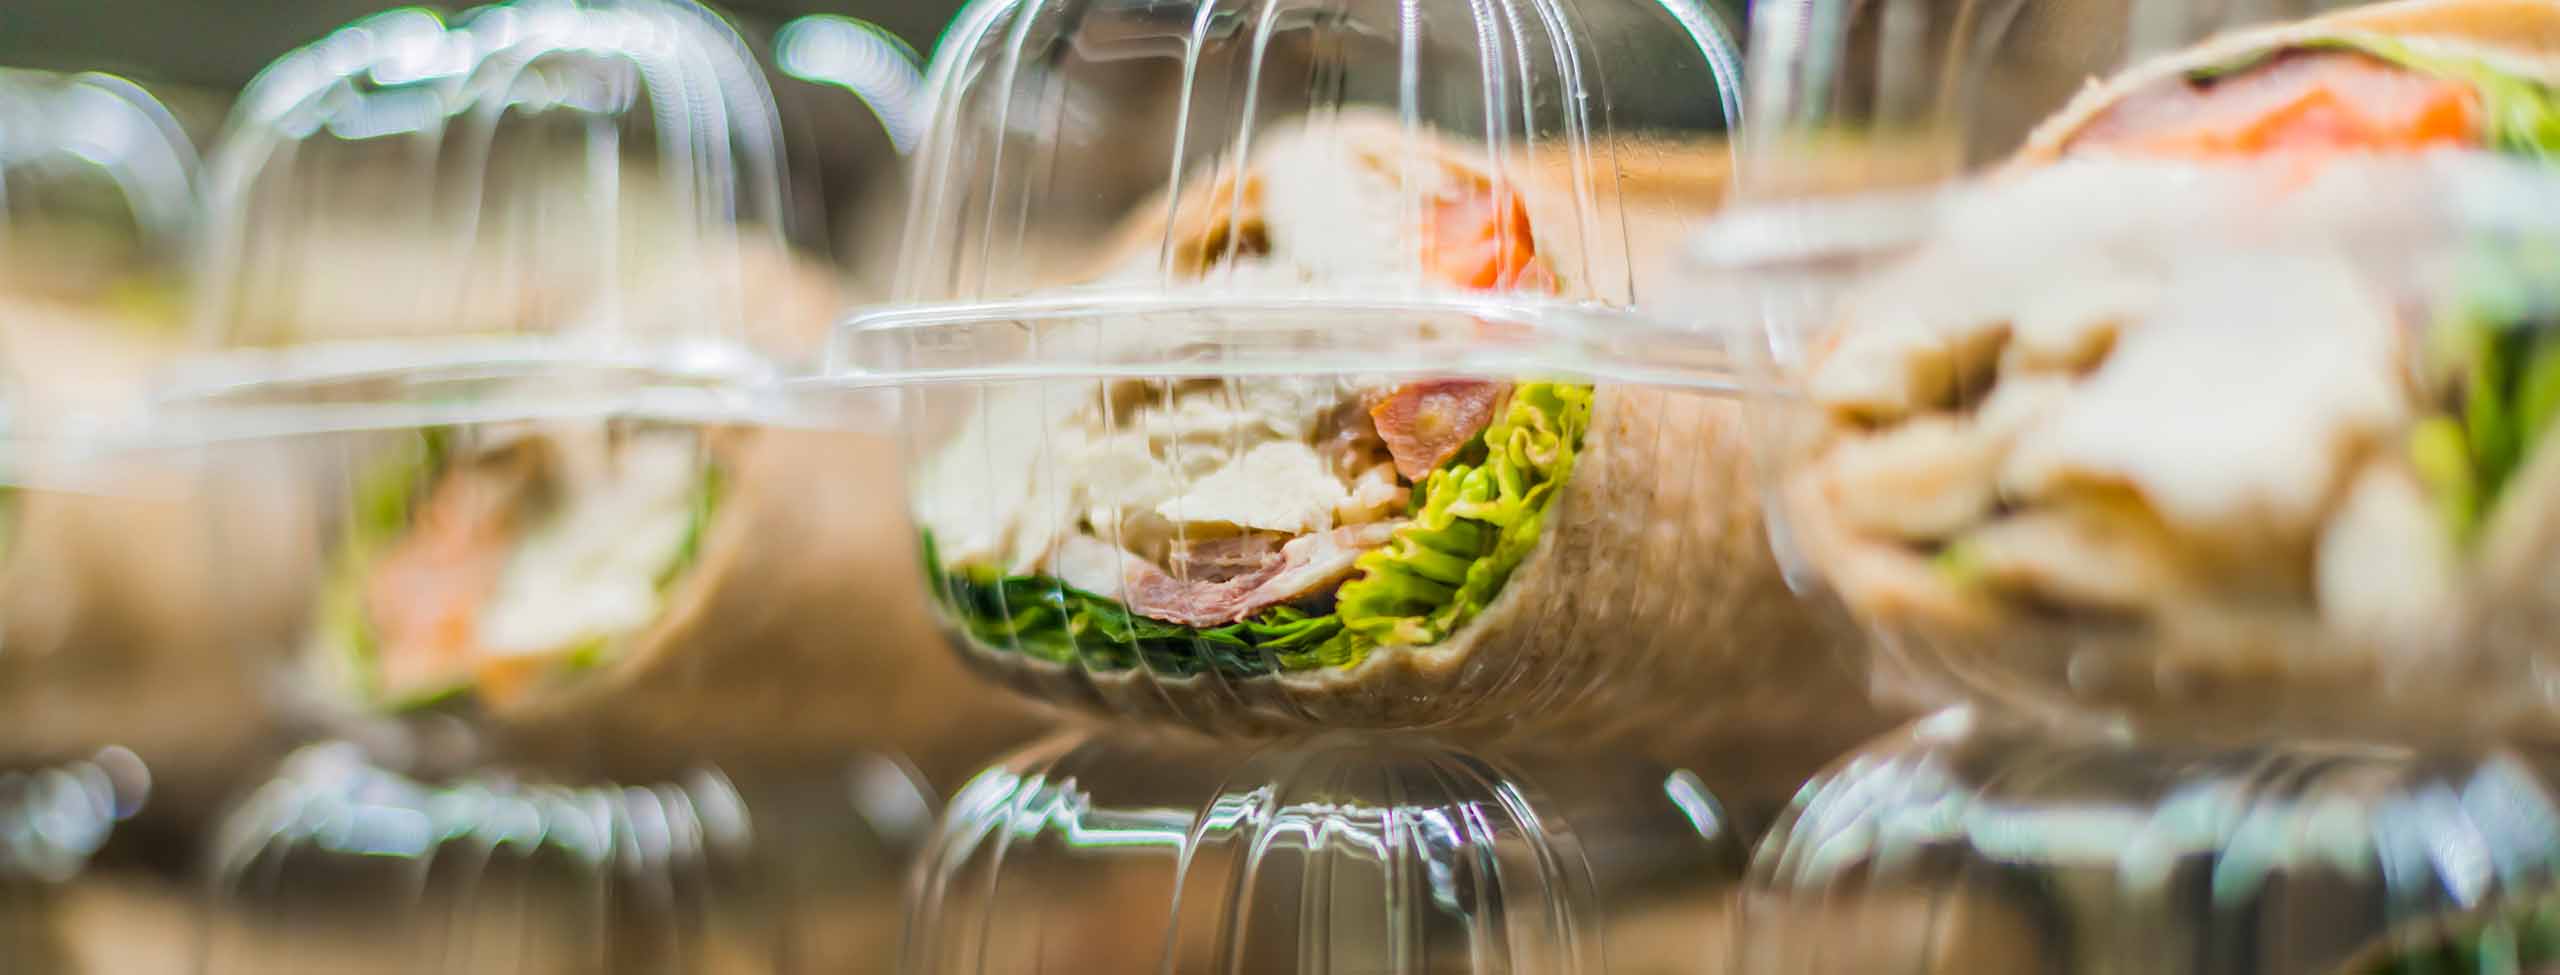 deli sandwiches in plastic containers